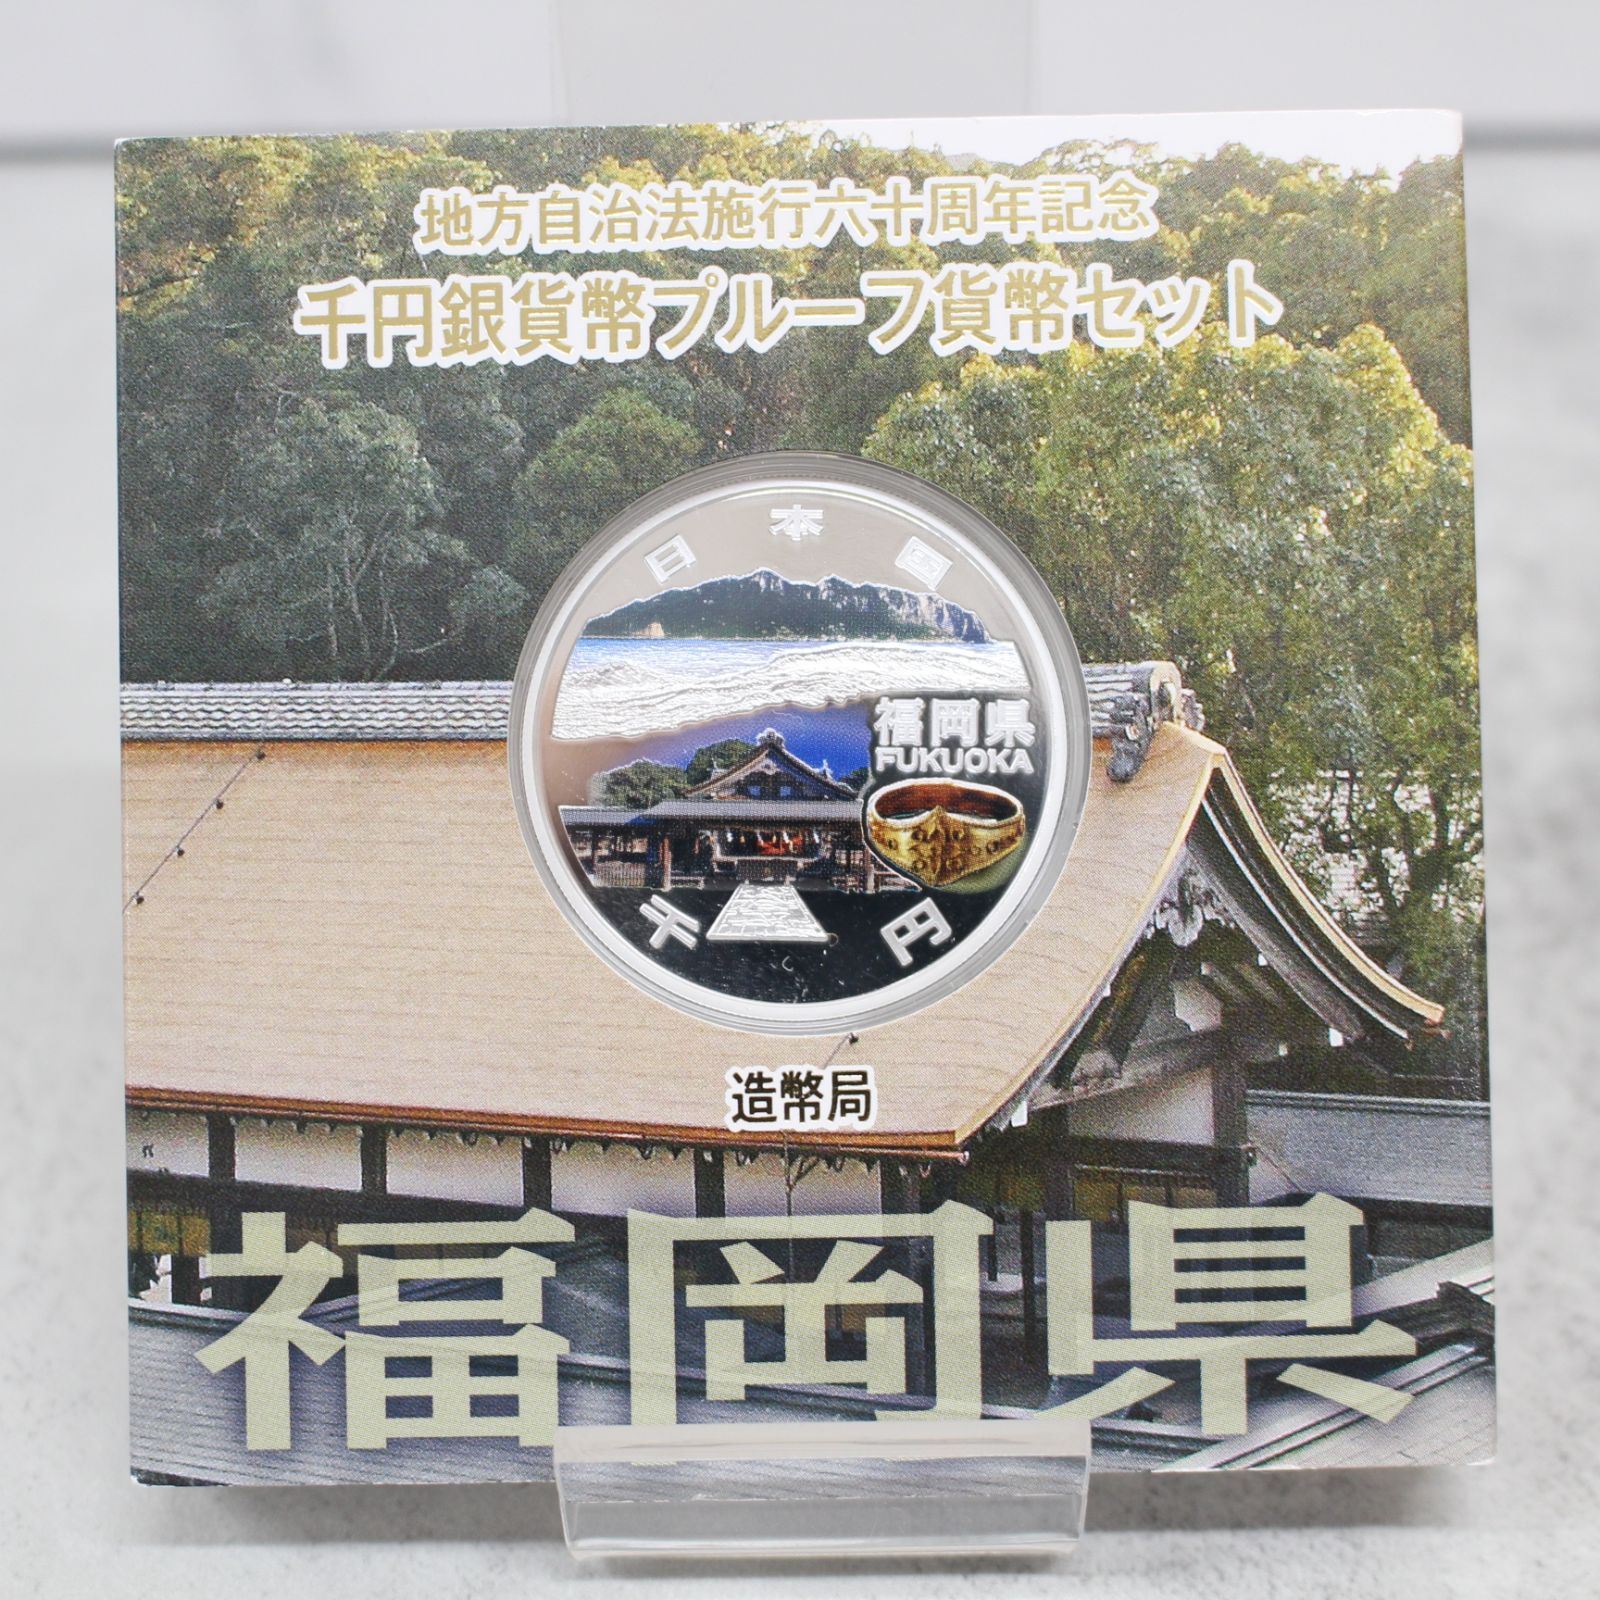 地方自治法施行六十周年記念 福岡県